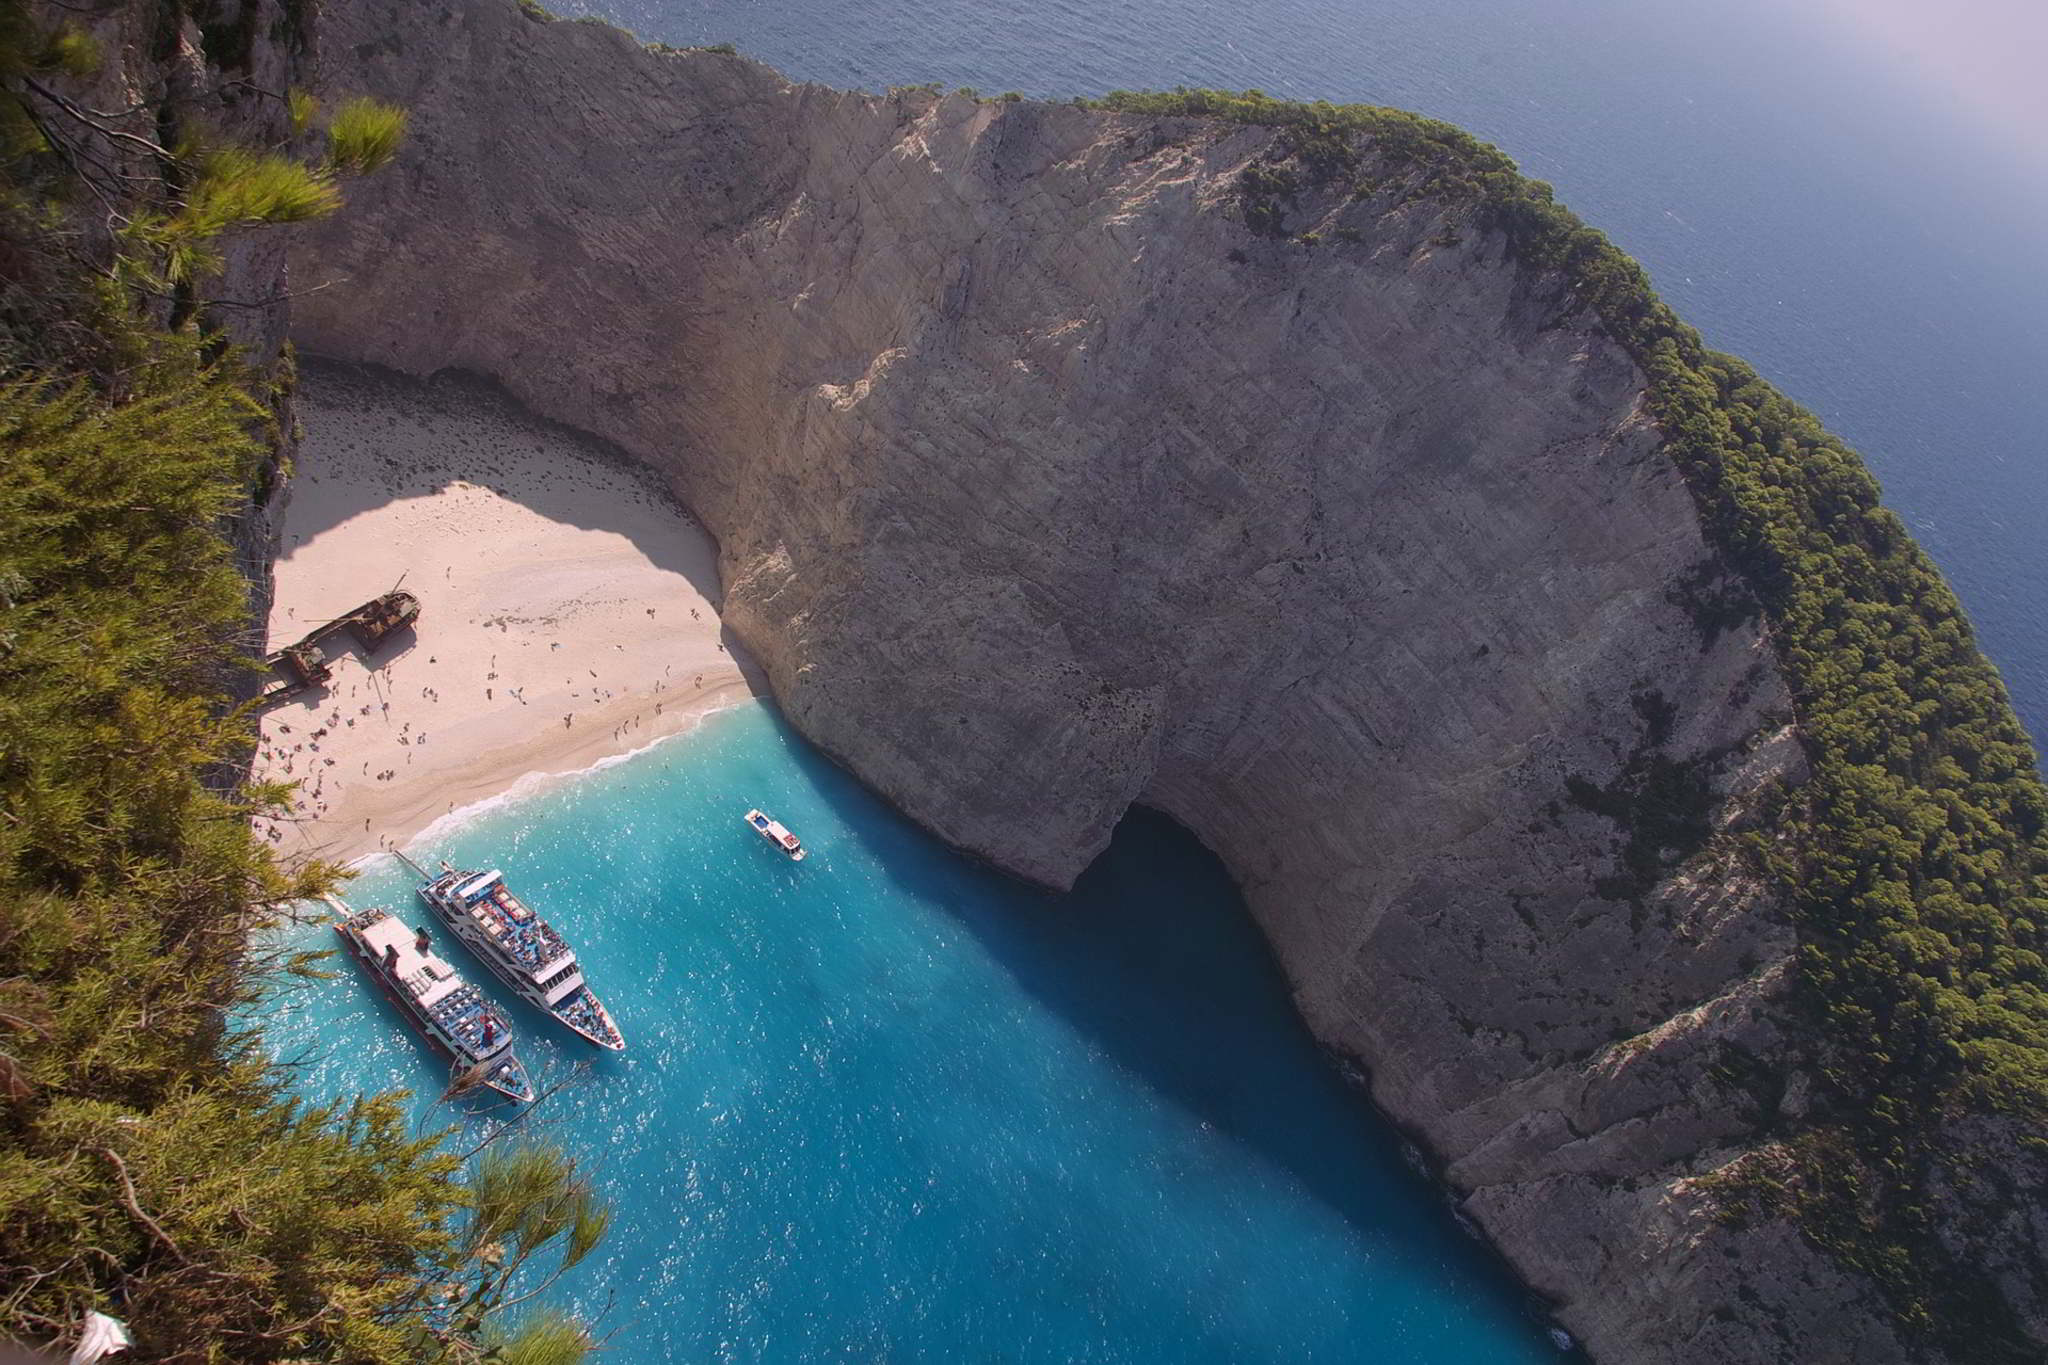 greckie wyspy